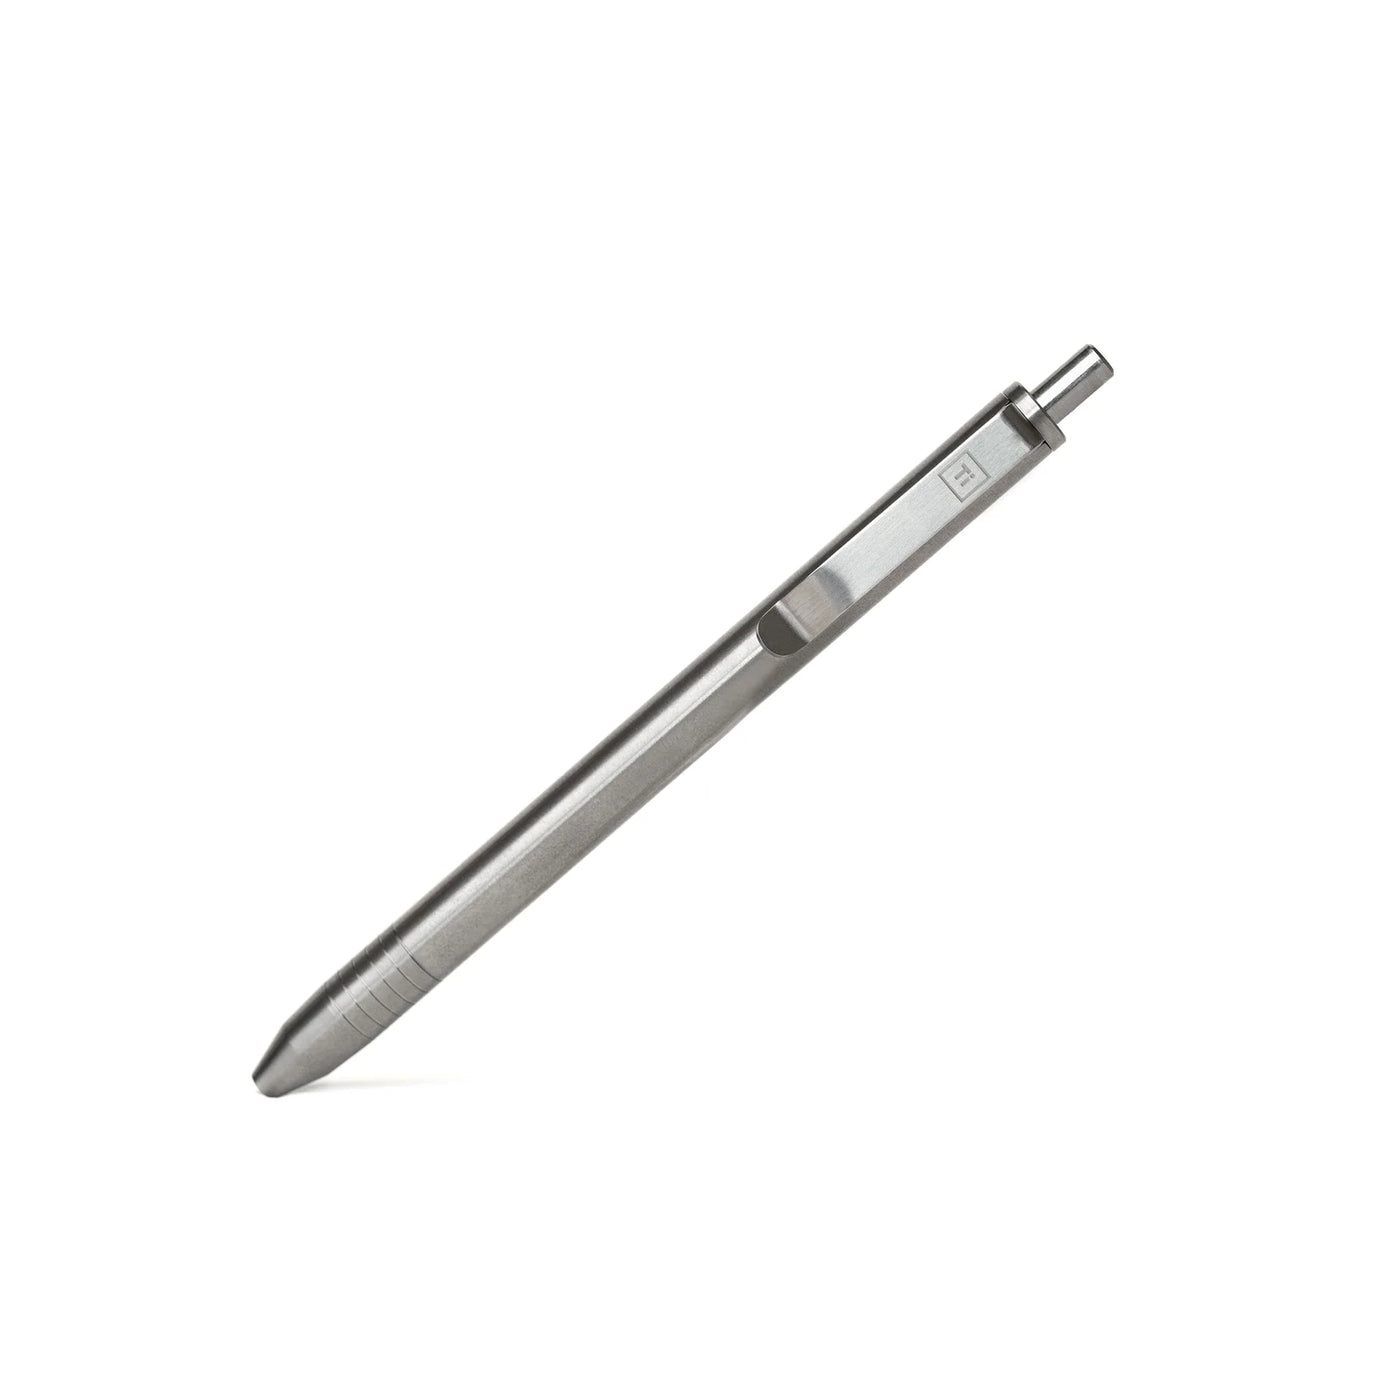 Big Idea Design - Slim Click Pen